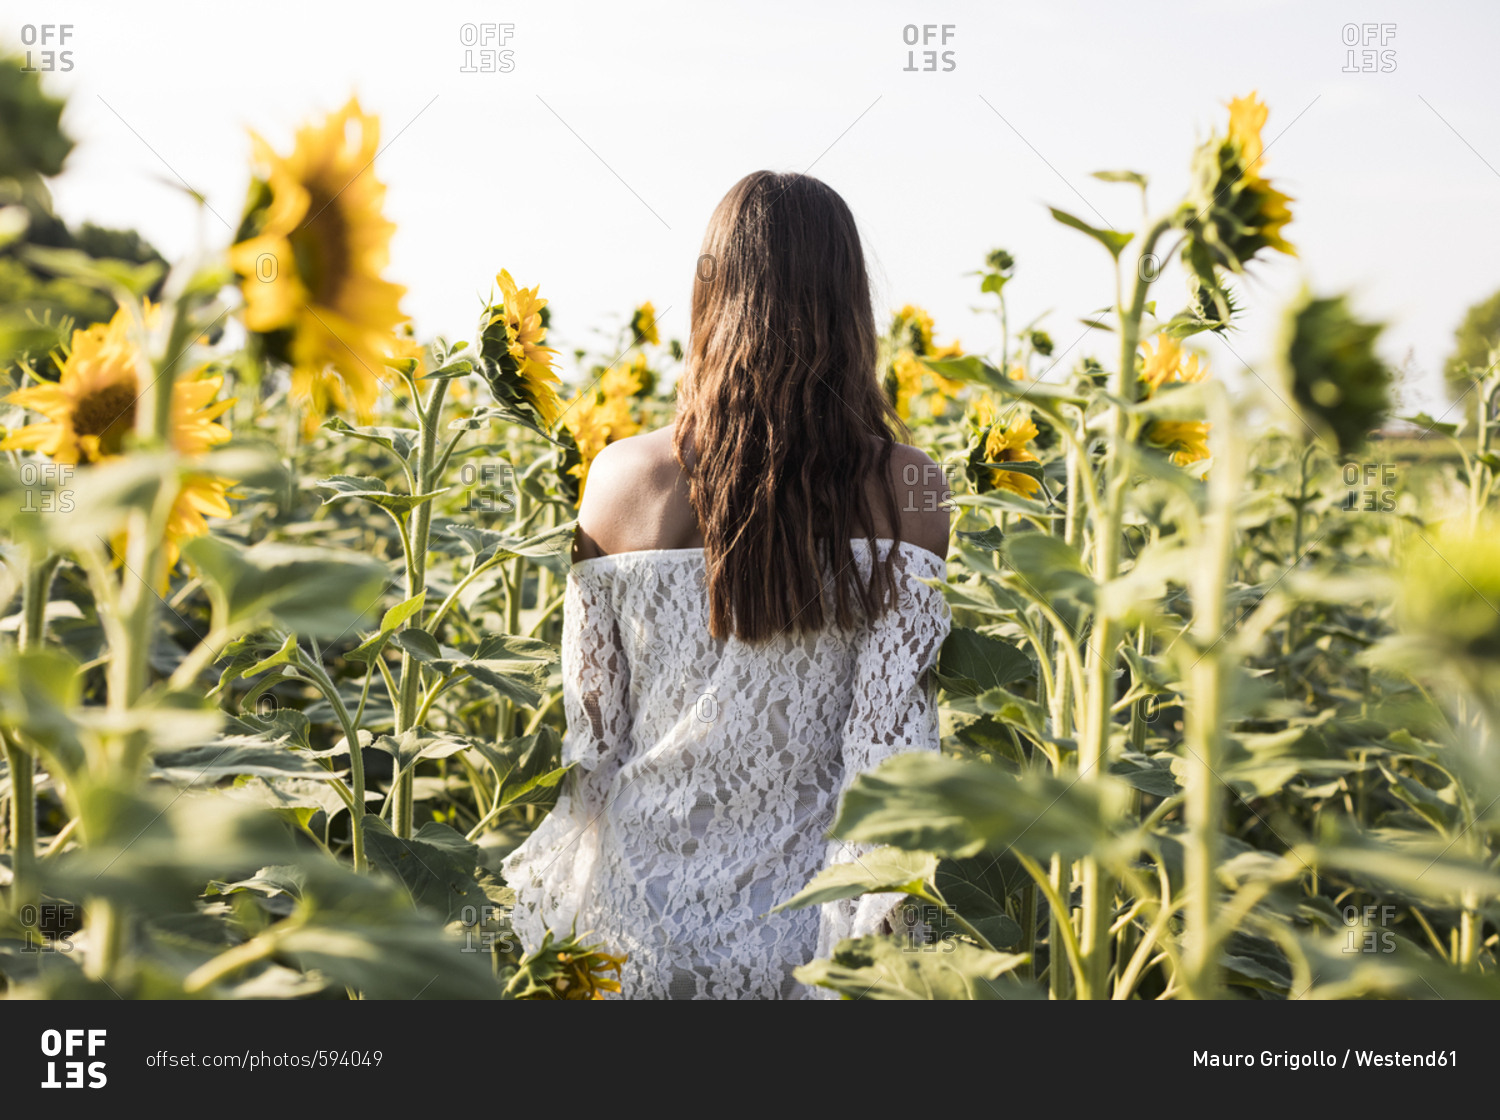 Woman in a sunflower field